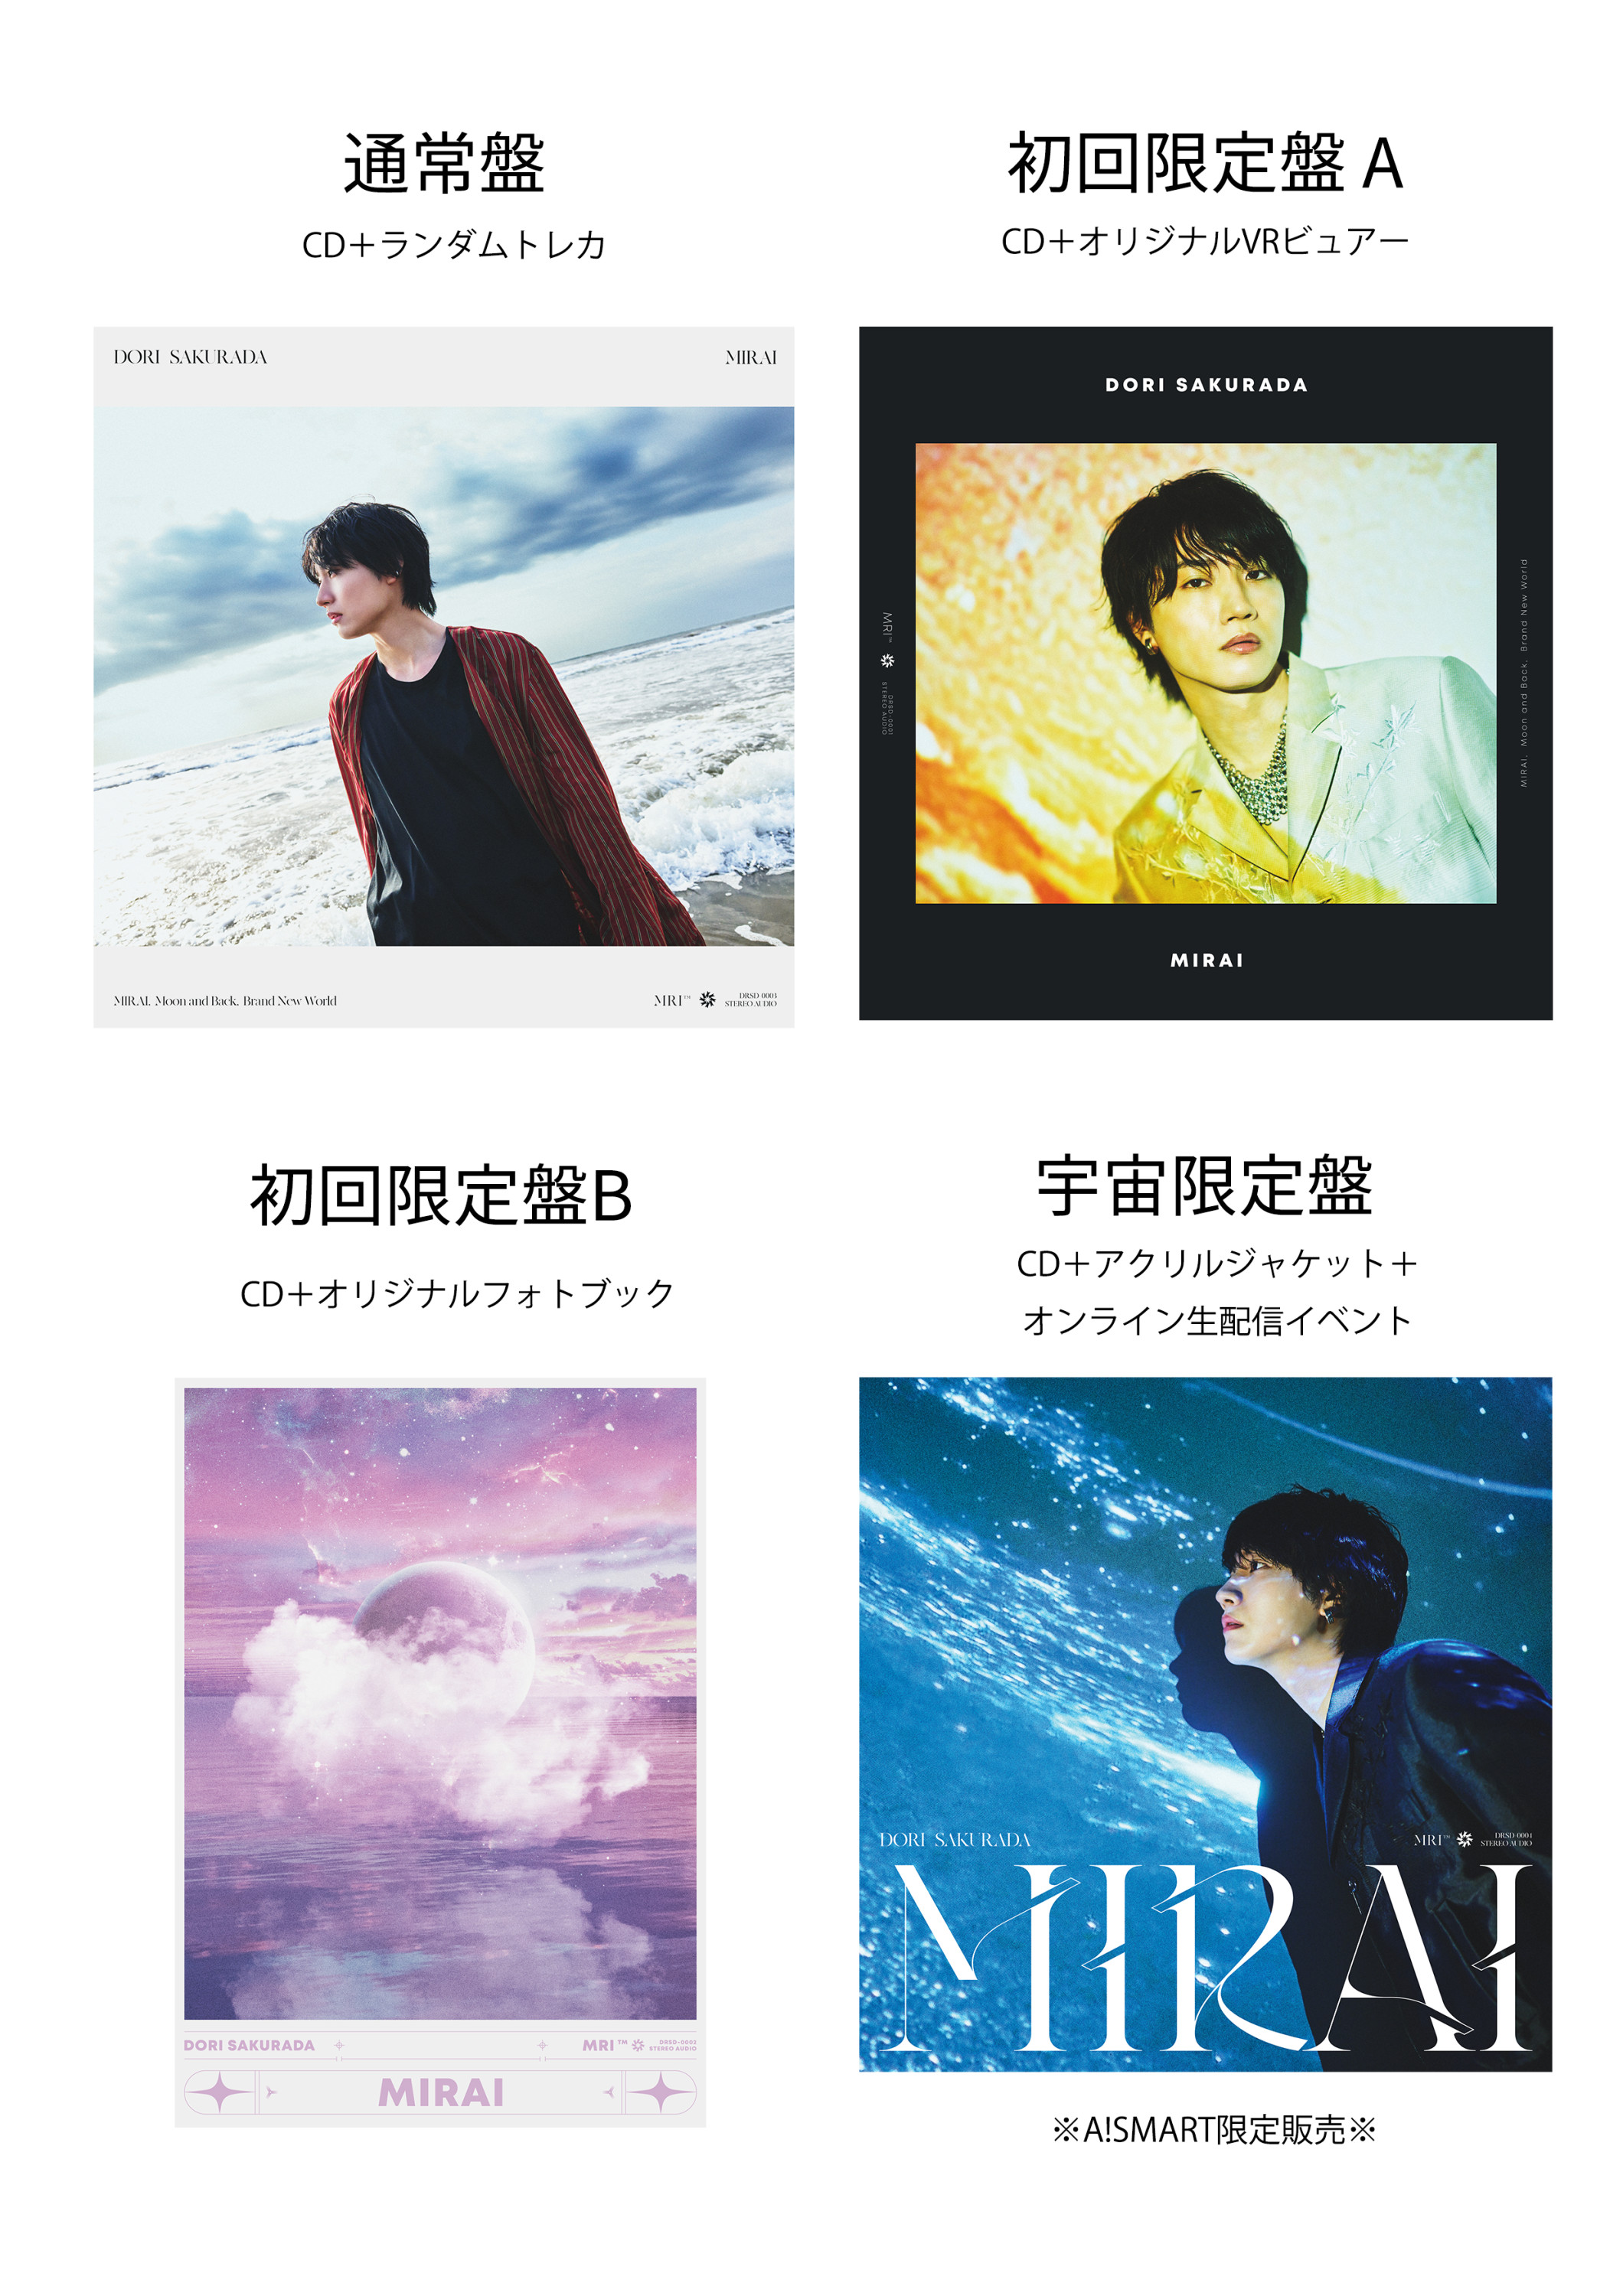 今春配信リリースしたデビューシングル「MIRAI」7月19日(水)CD発売決定！